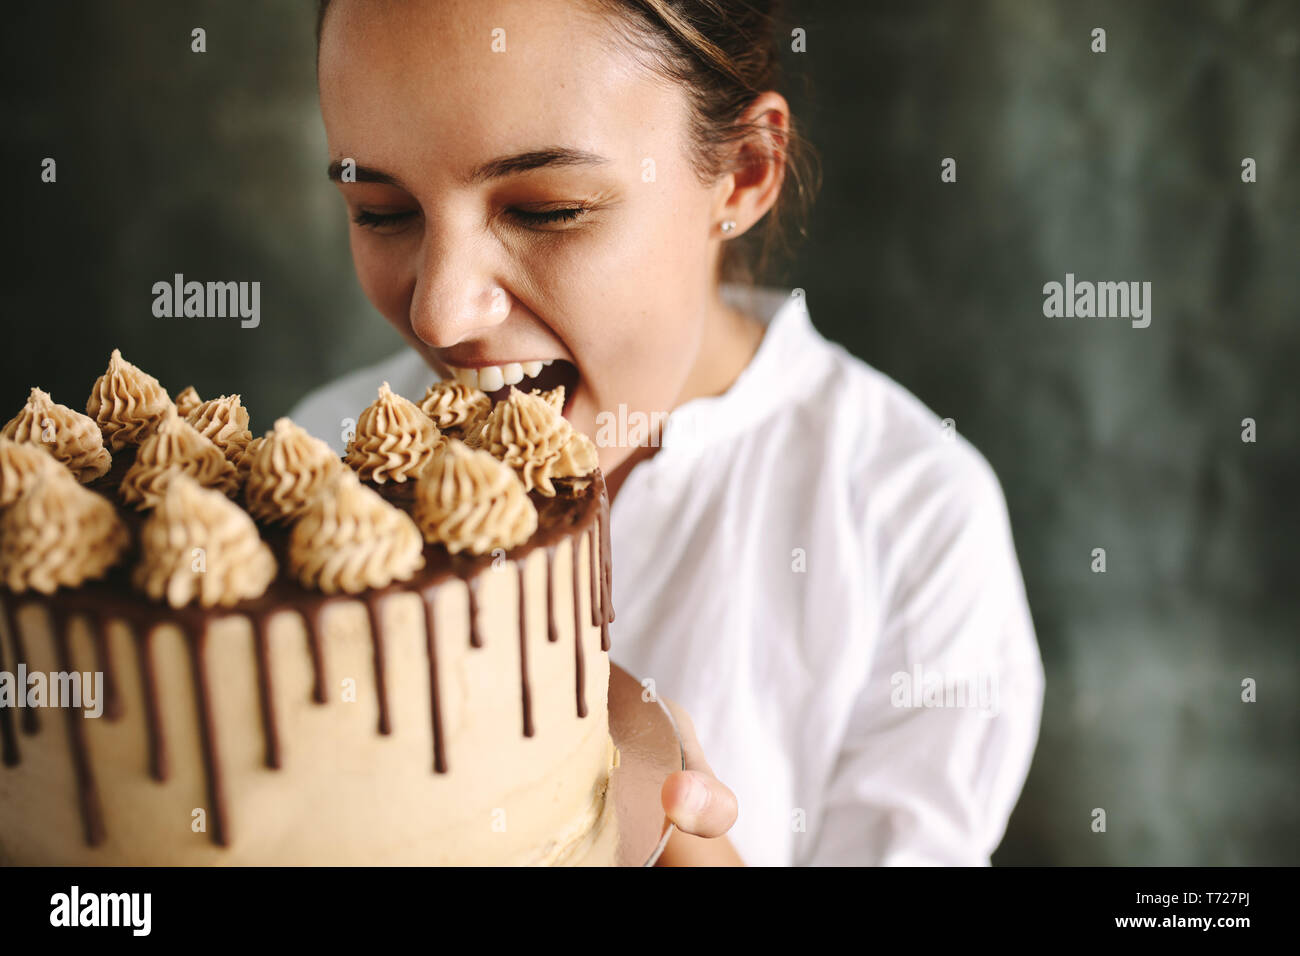 Weibliche Konditor Essen der ganzen Kuchen. Frau Koch mit einem großen Kuchen in der Hand und nahm einen Bissen. Stockfoto